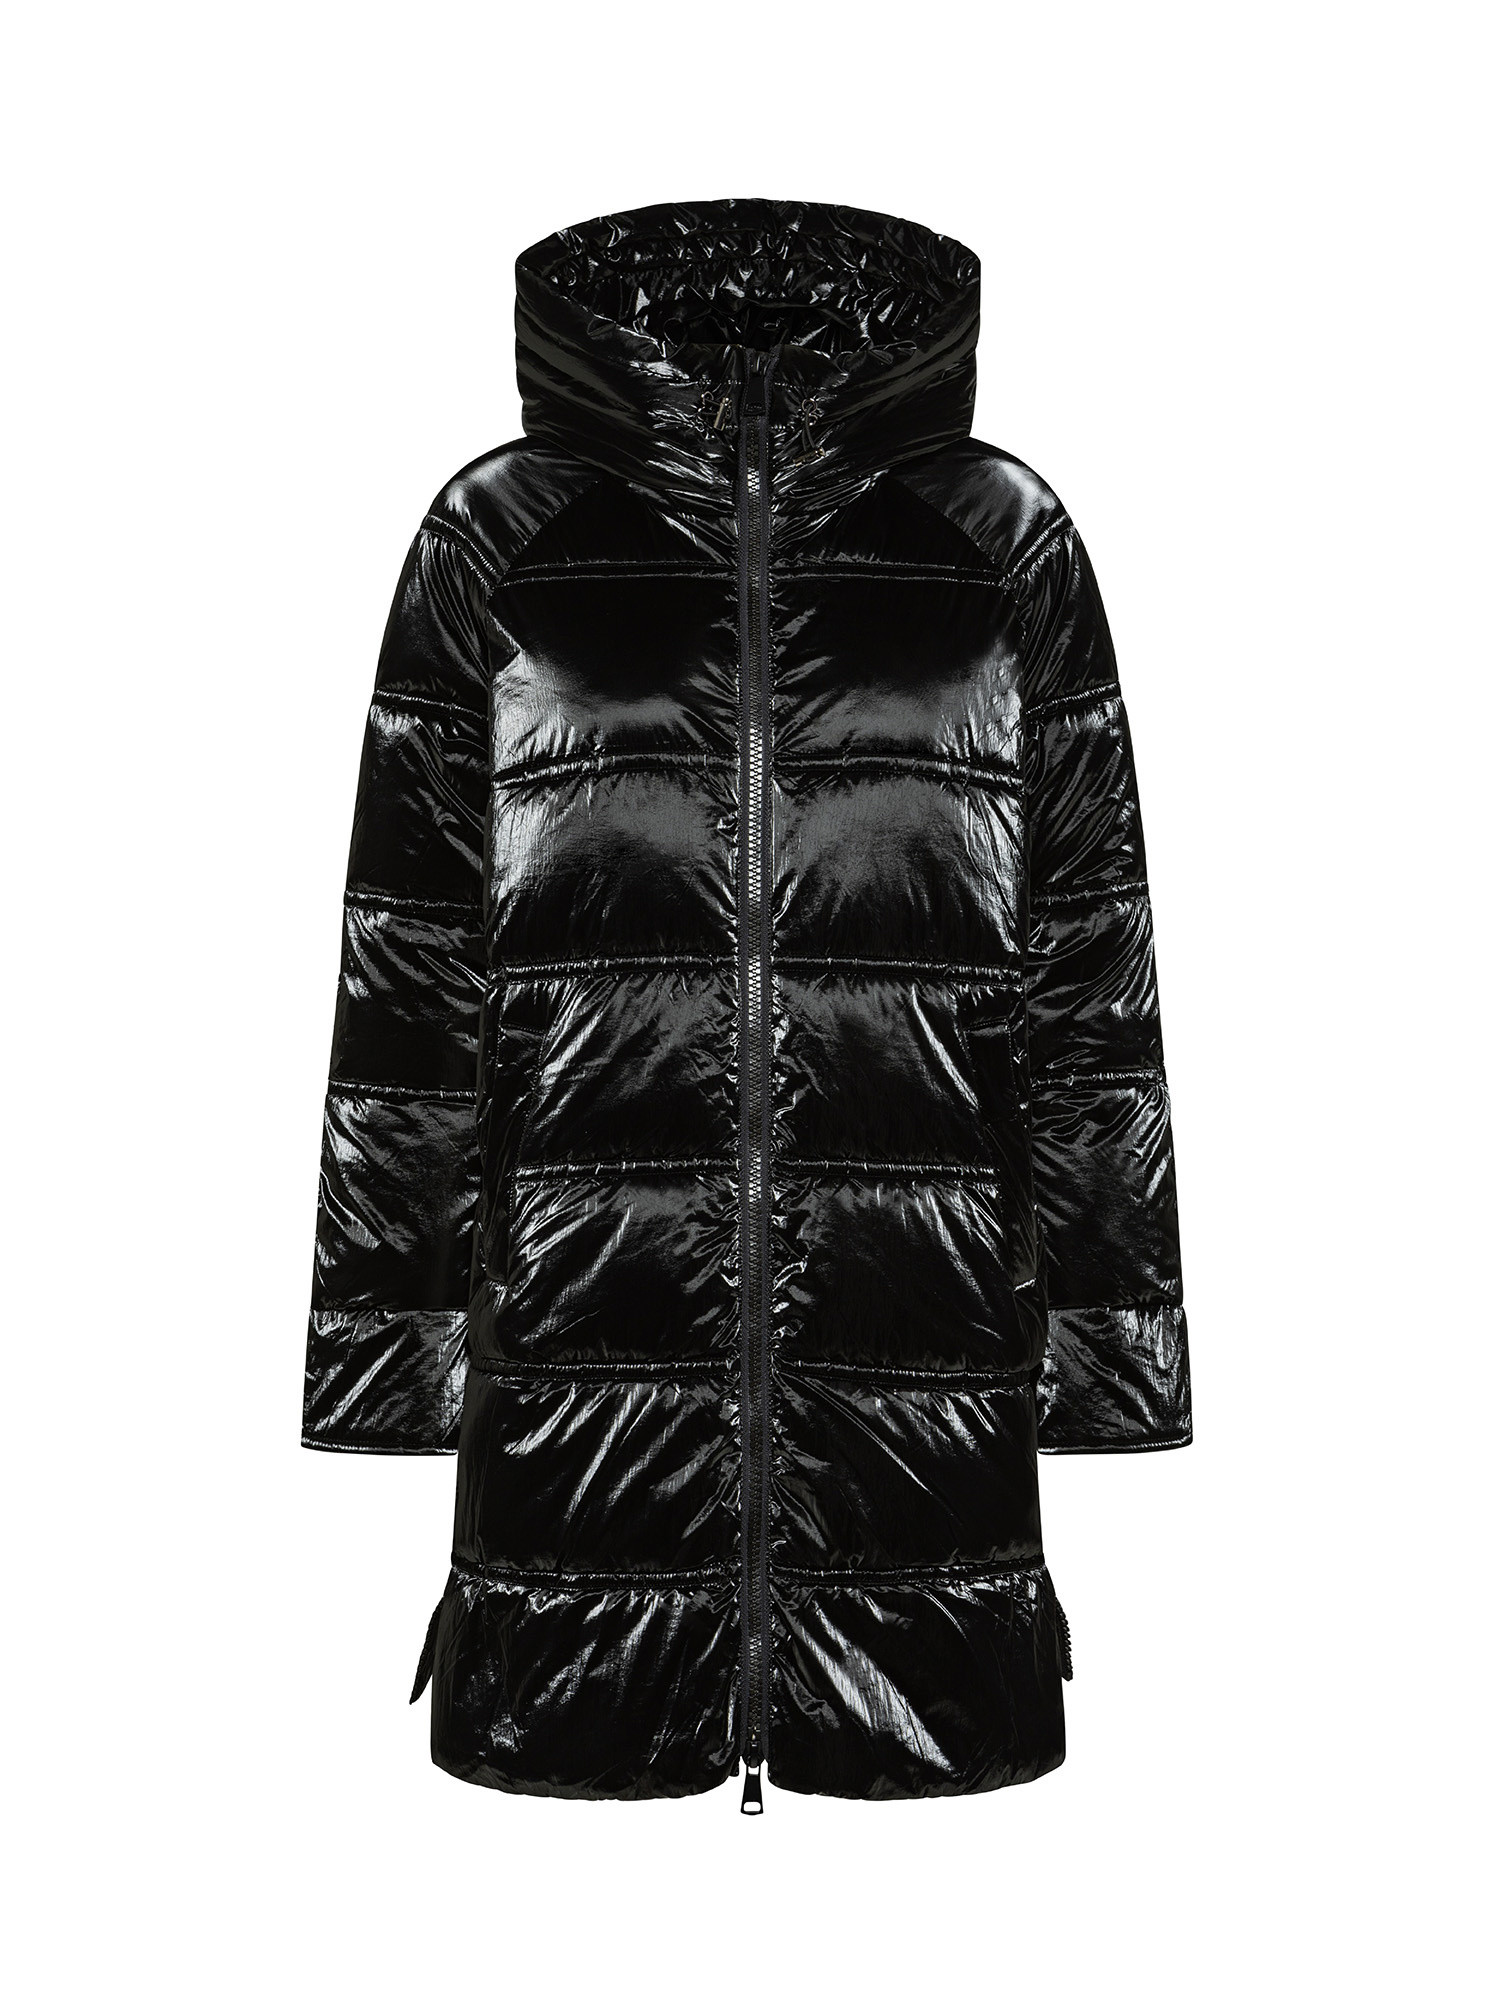 Koan - Shiny down jacket, Black, large image number 0